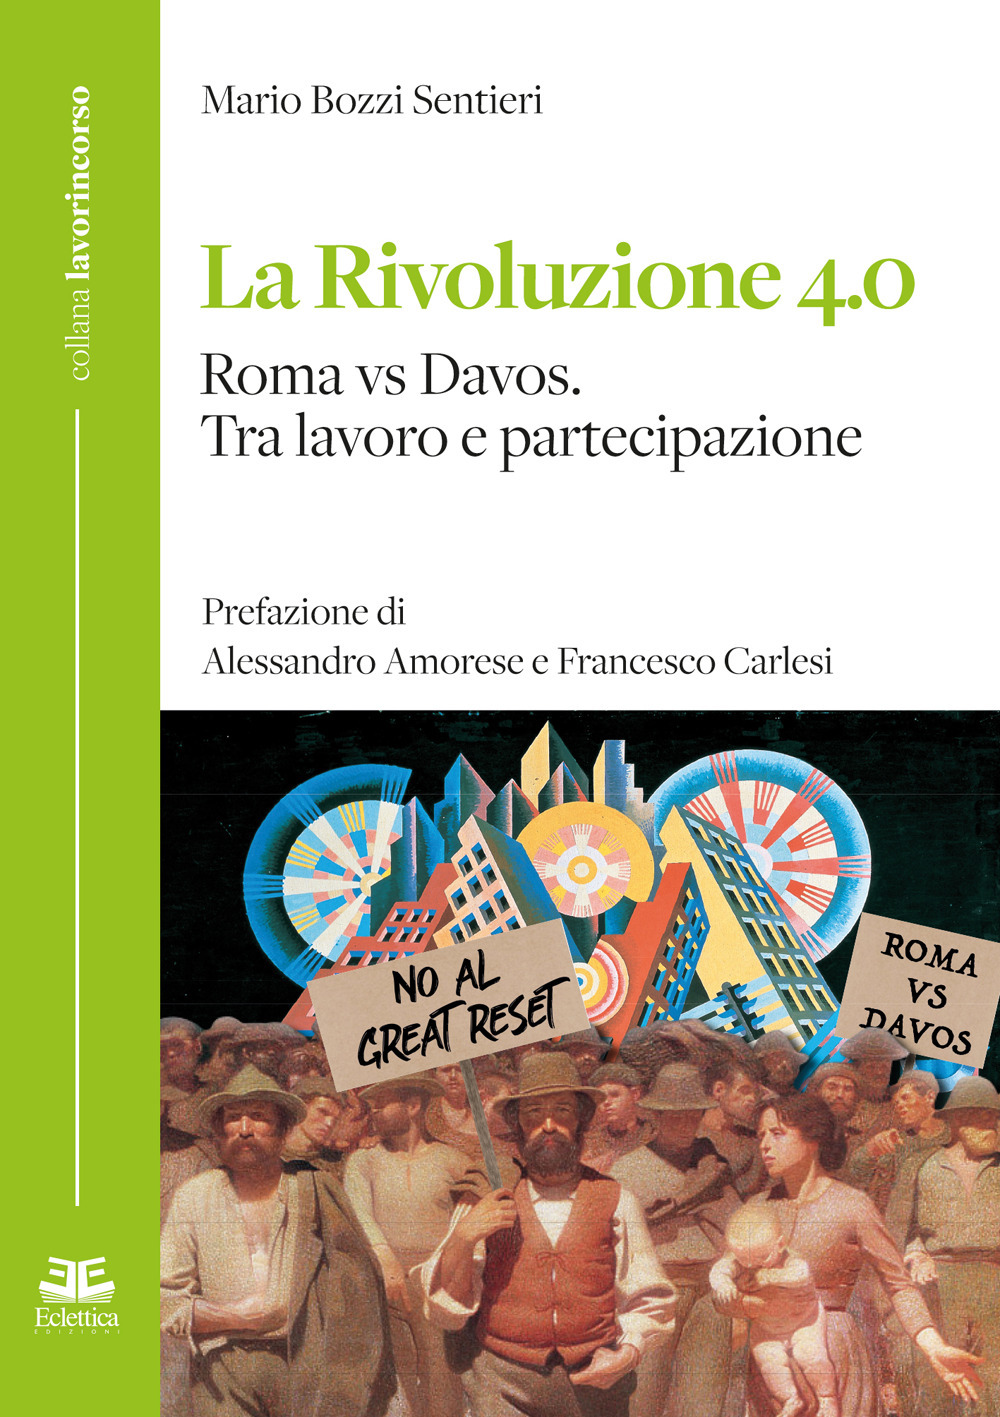 La rivoluzione 4.0 Roma vs Davos. Tra lavoro e partecipazione